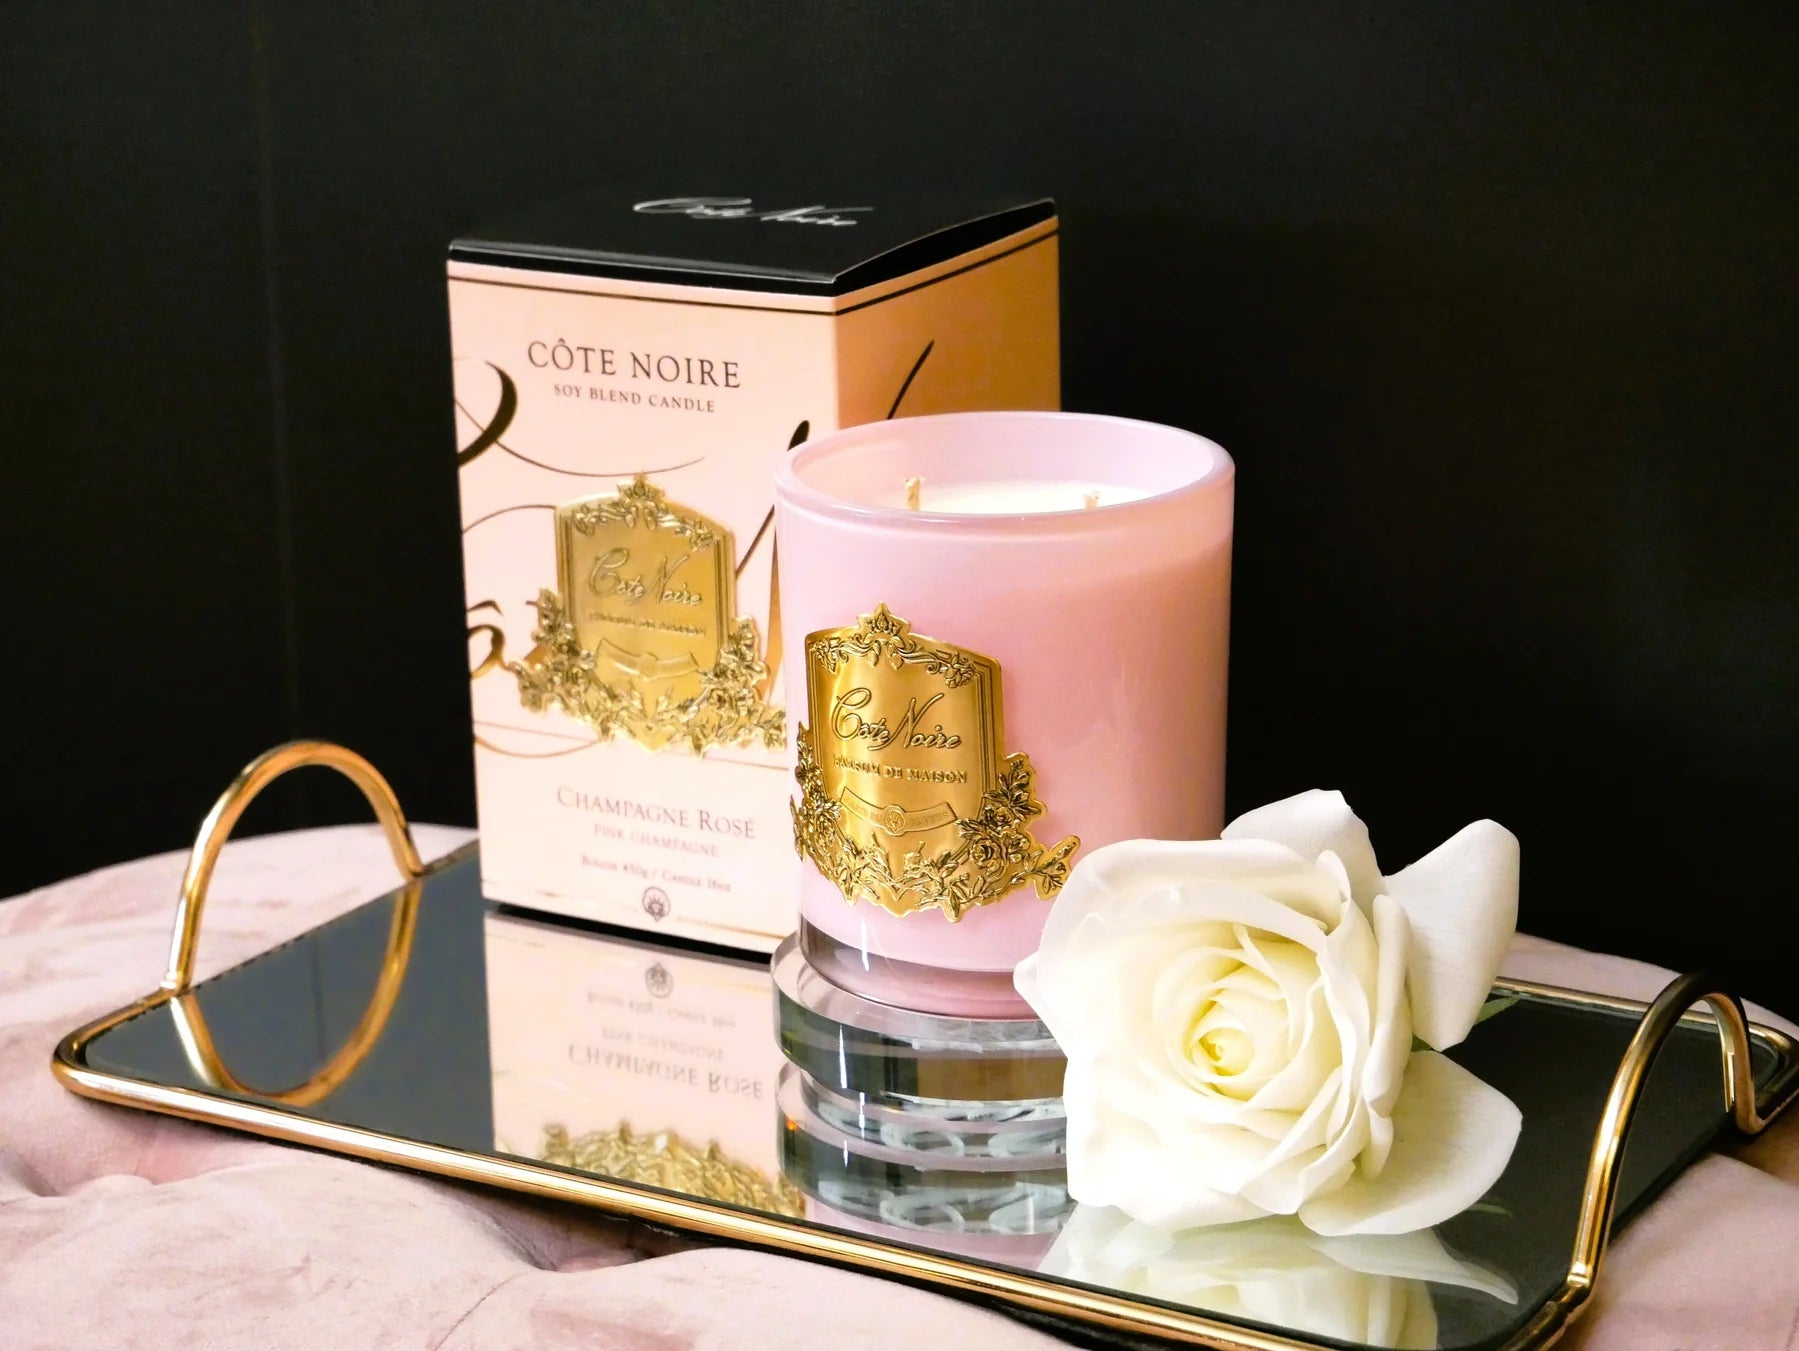 pinke duftkerze mit goldener inschrift, pinke verpackung und weisse single rose auf goldenem serviertablett. seitenansicht.